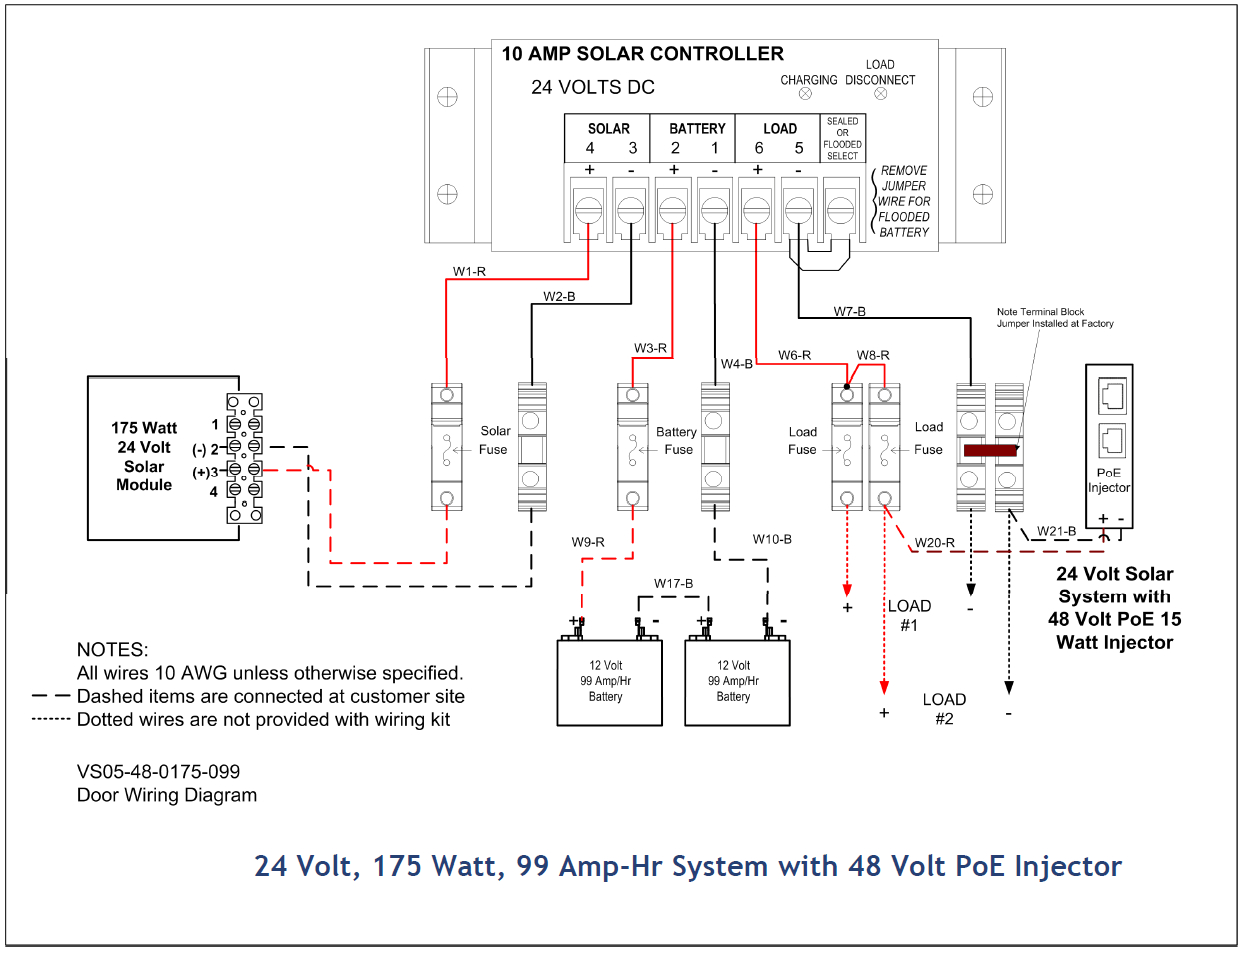 12 Volt Dc To 24 Volt Dc Wiring Diagram | Wiring Library - 24 Volt Wiring Diagram